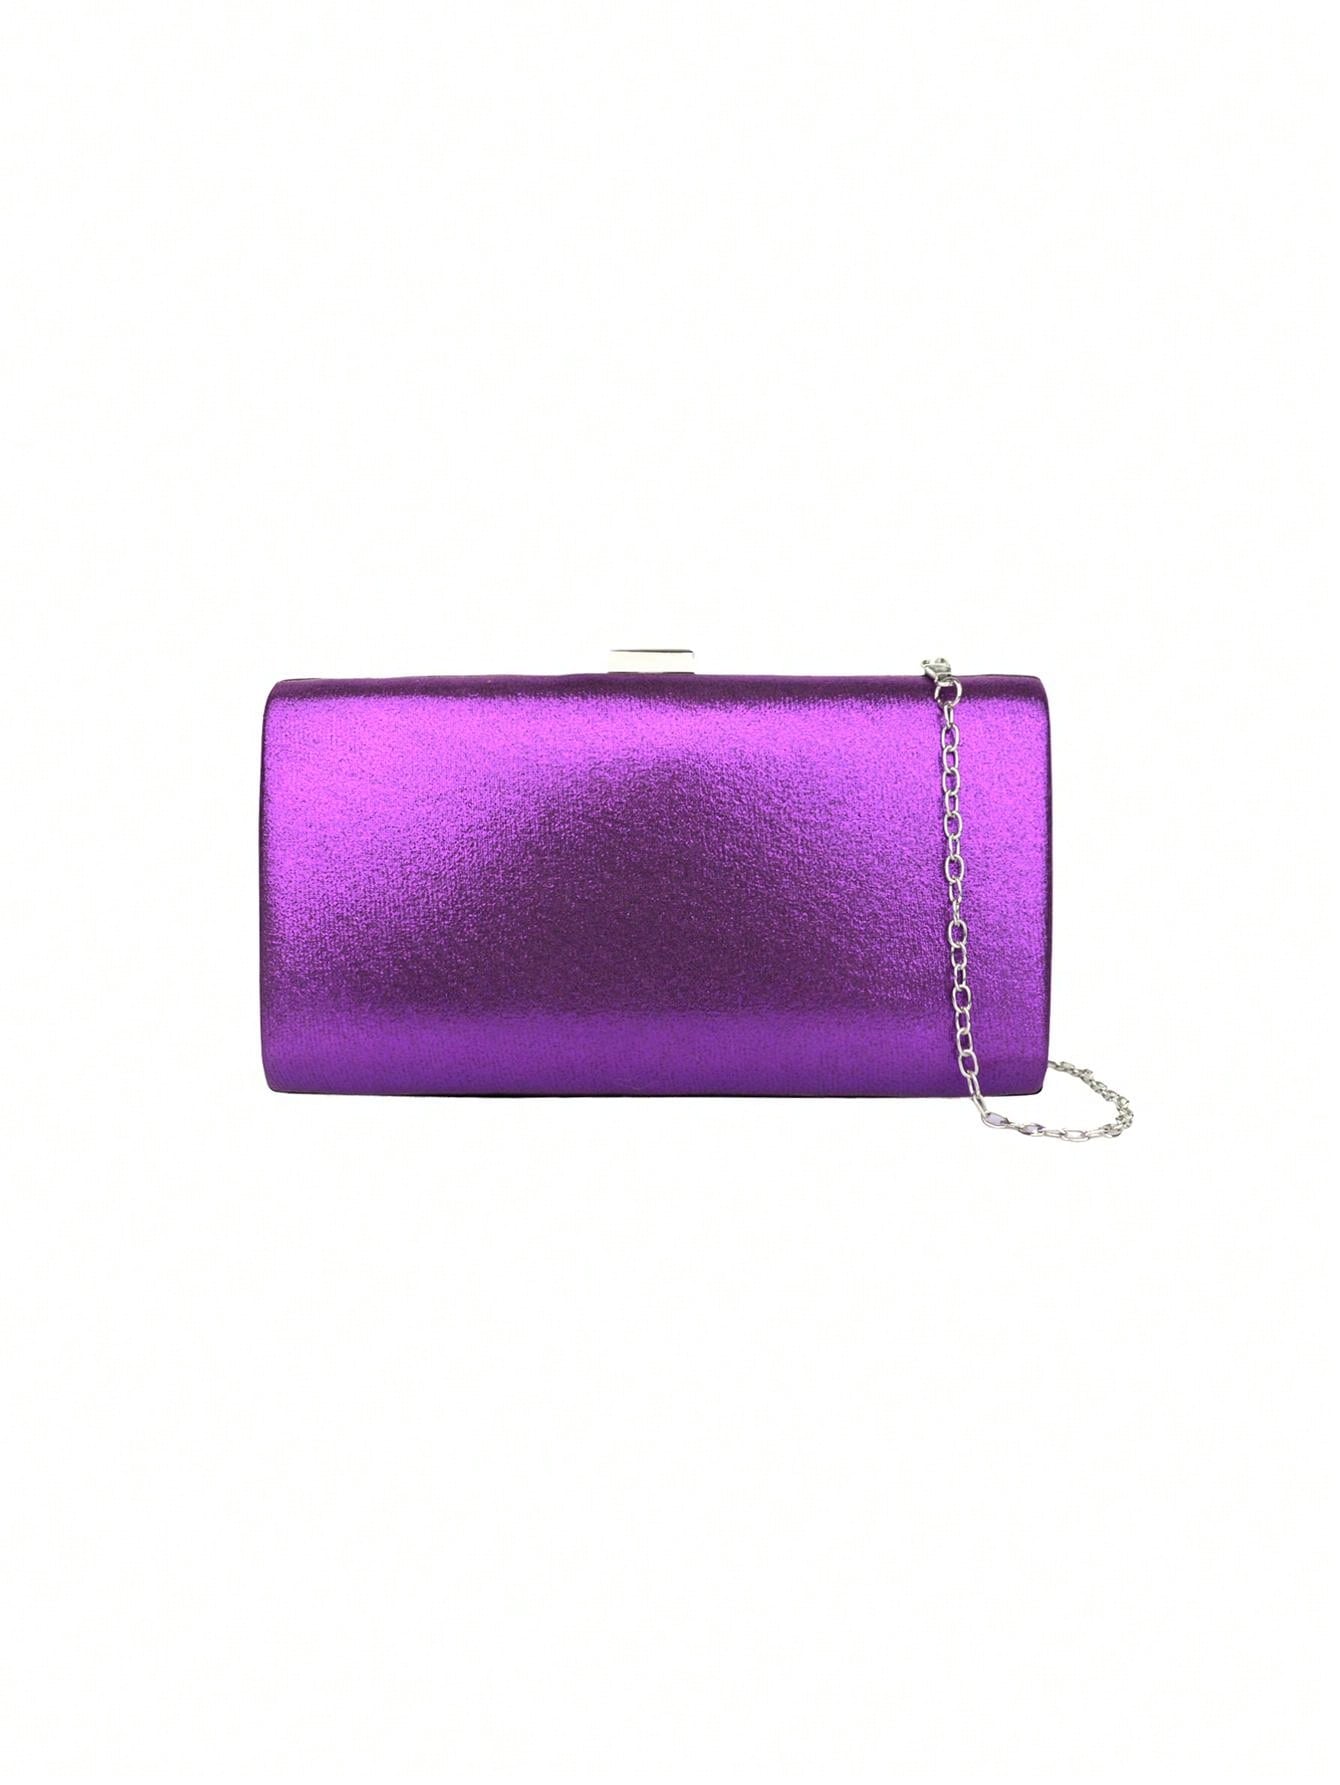 Женский клатч Вечерняя сумка из жесткого материала с платьем для банкета, фиолетовый